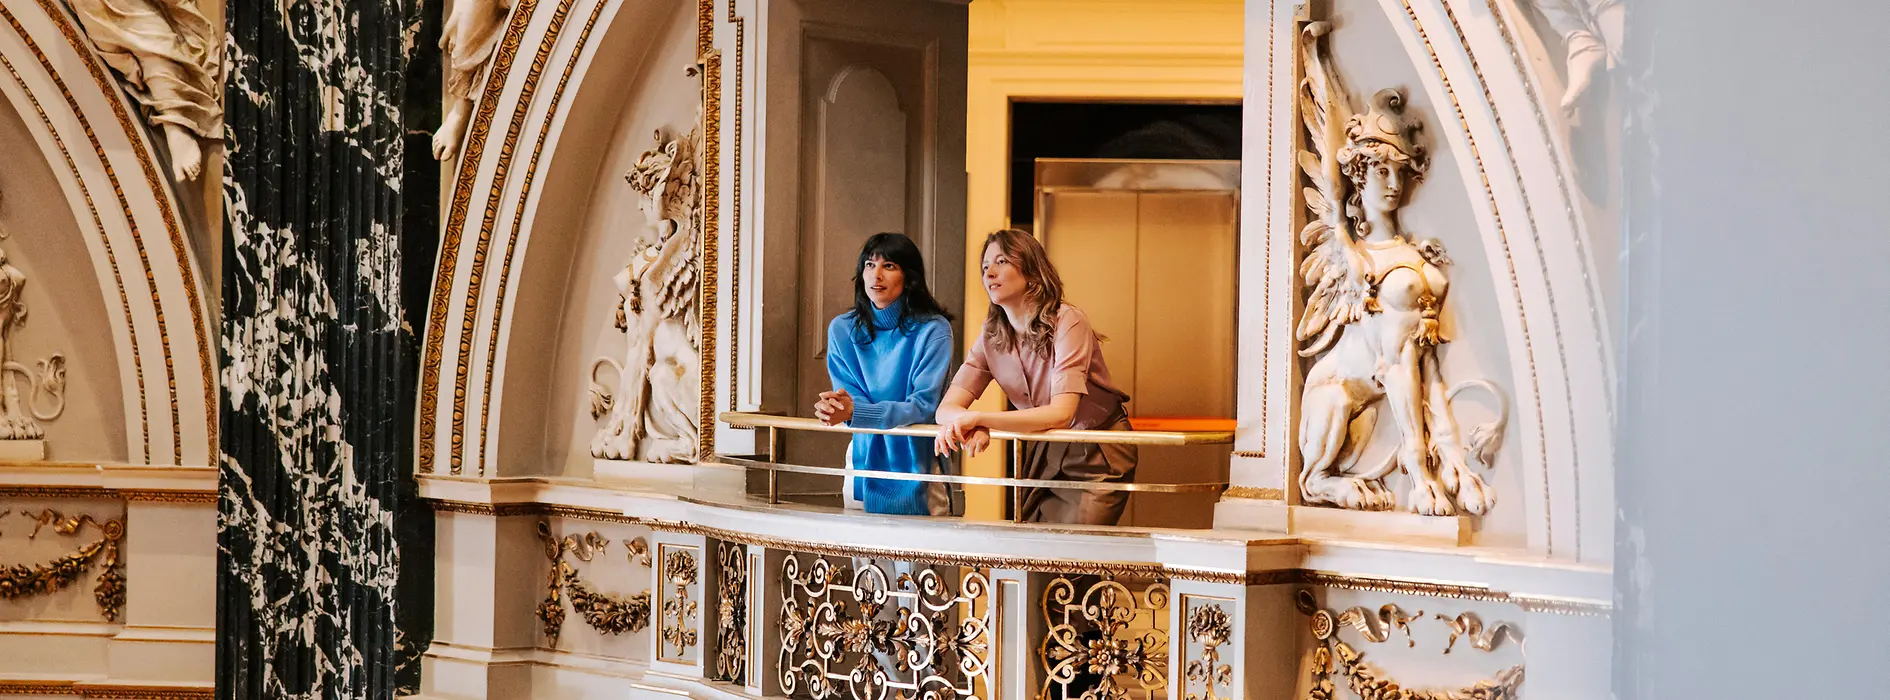 Deux femmes debout dans une galerie du musée d’Histoire de l’art de Vienne